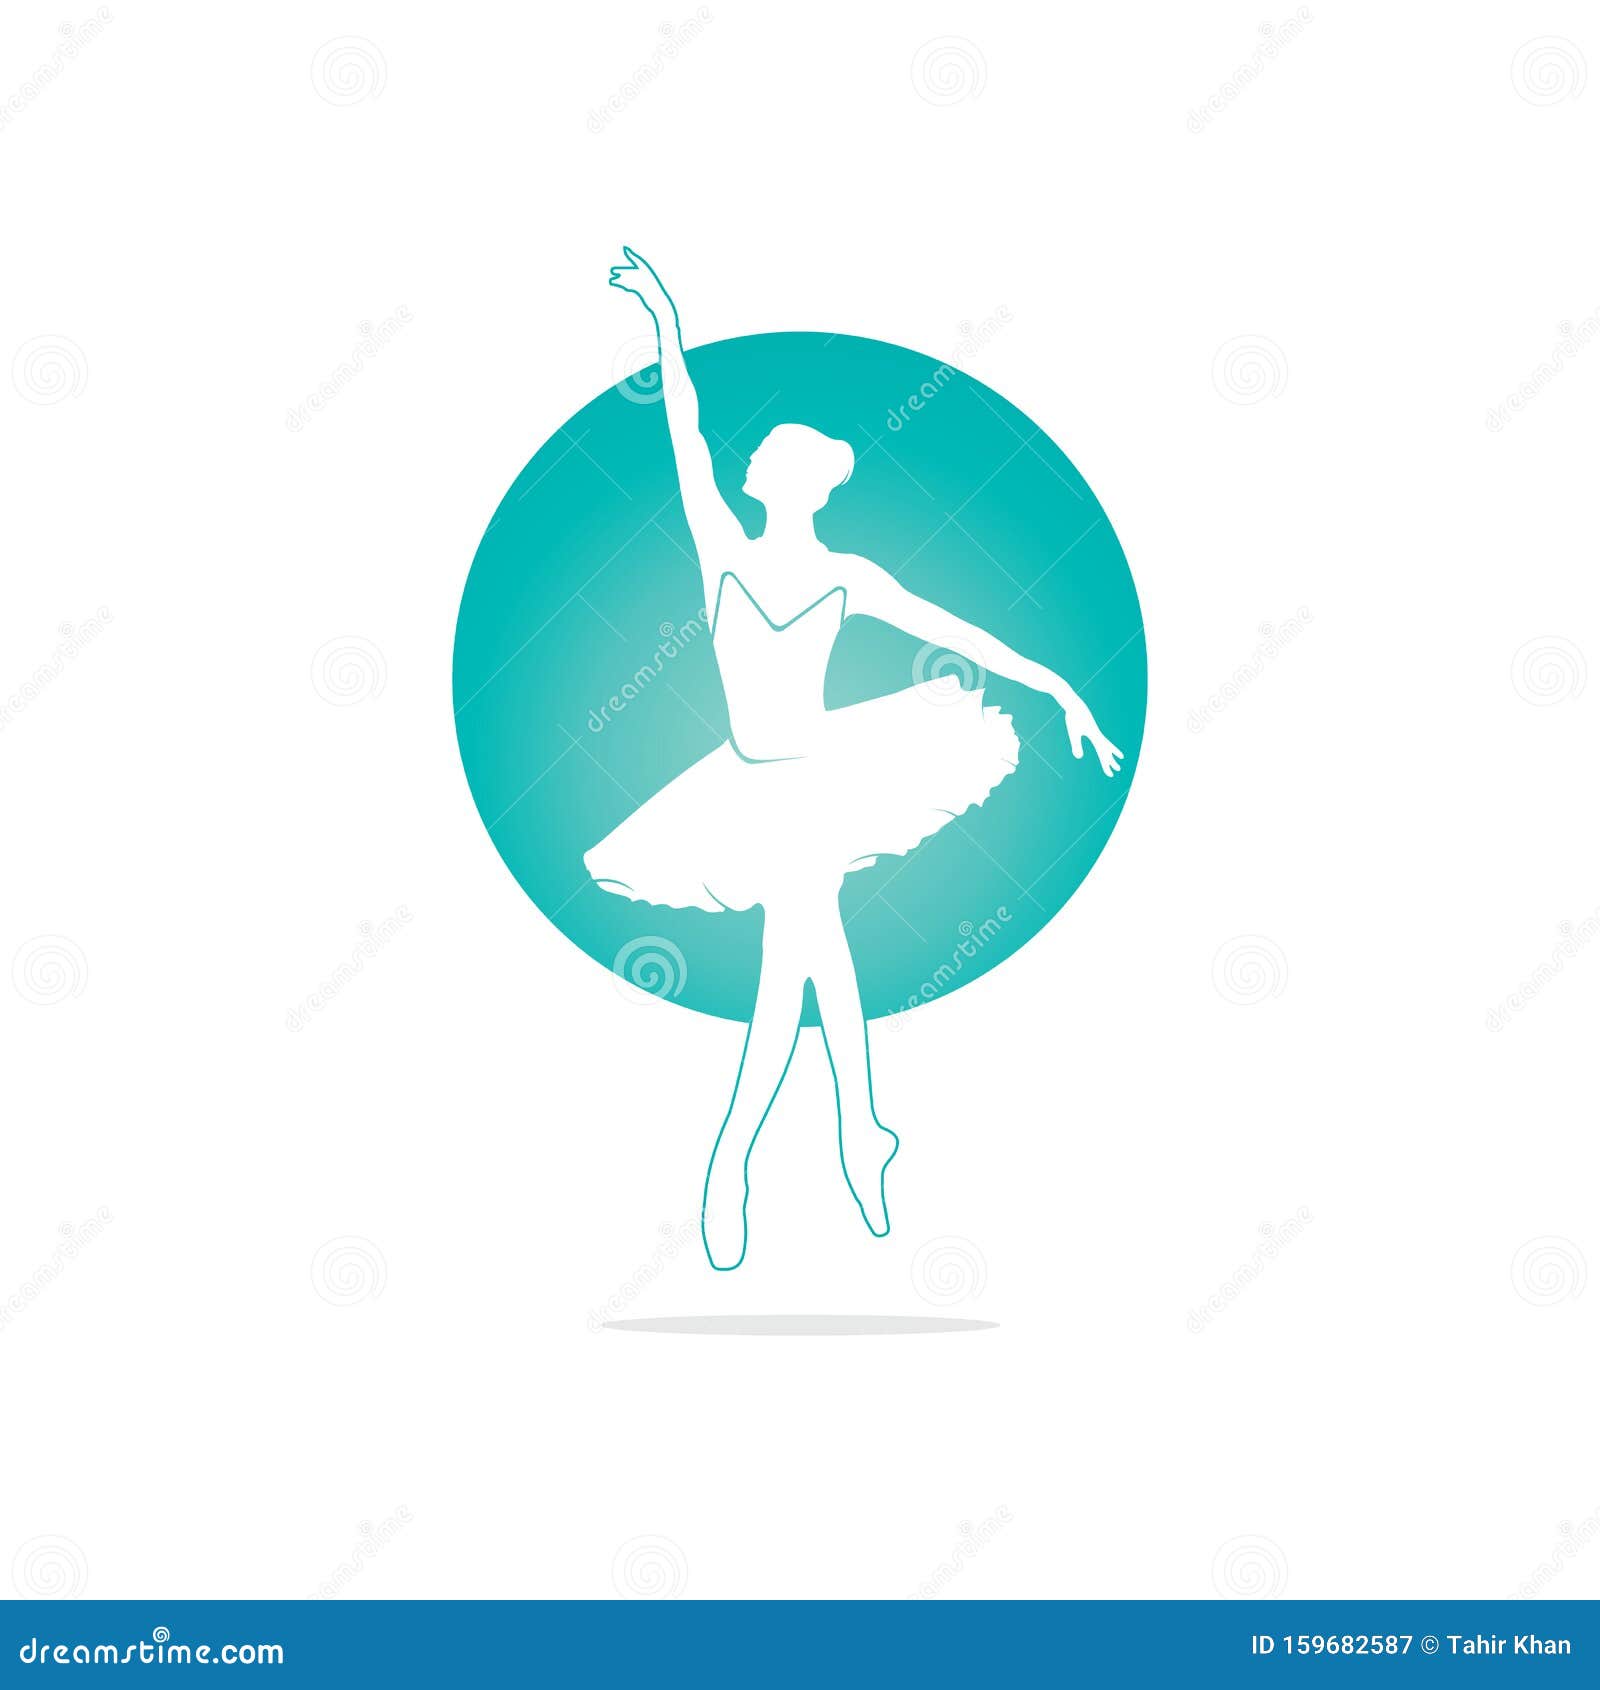 Ballet dancer logo design. stock illustration. Illustration of dance ...